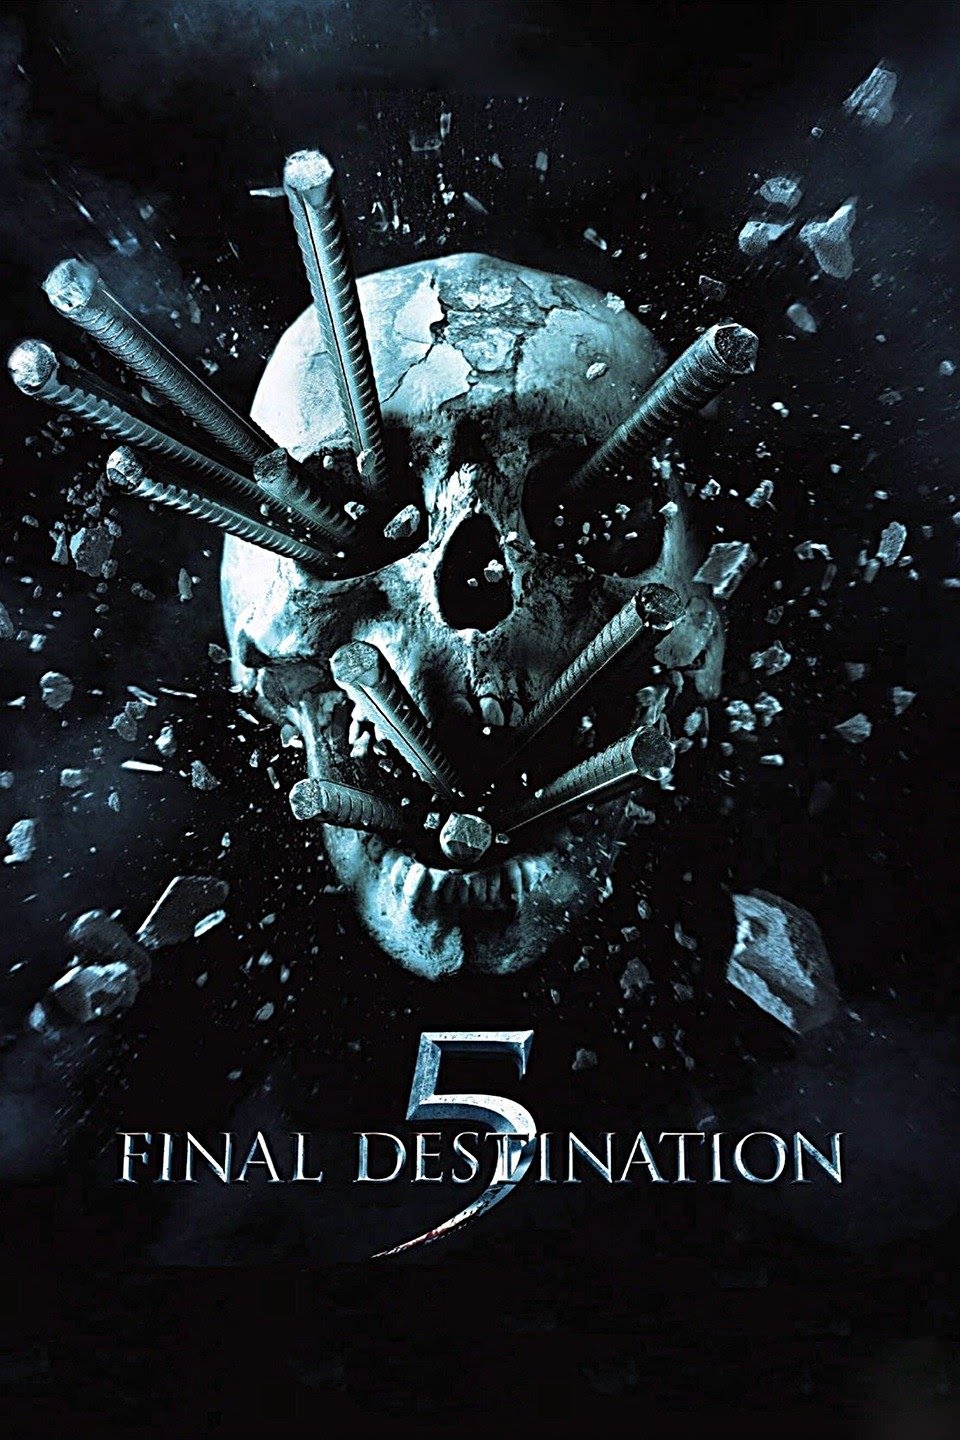 Final Destination 5 (2011) Vudu or Movies Anywhere HD code